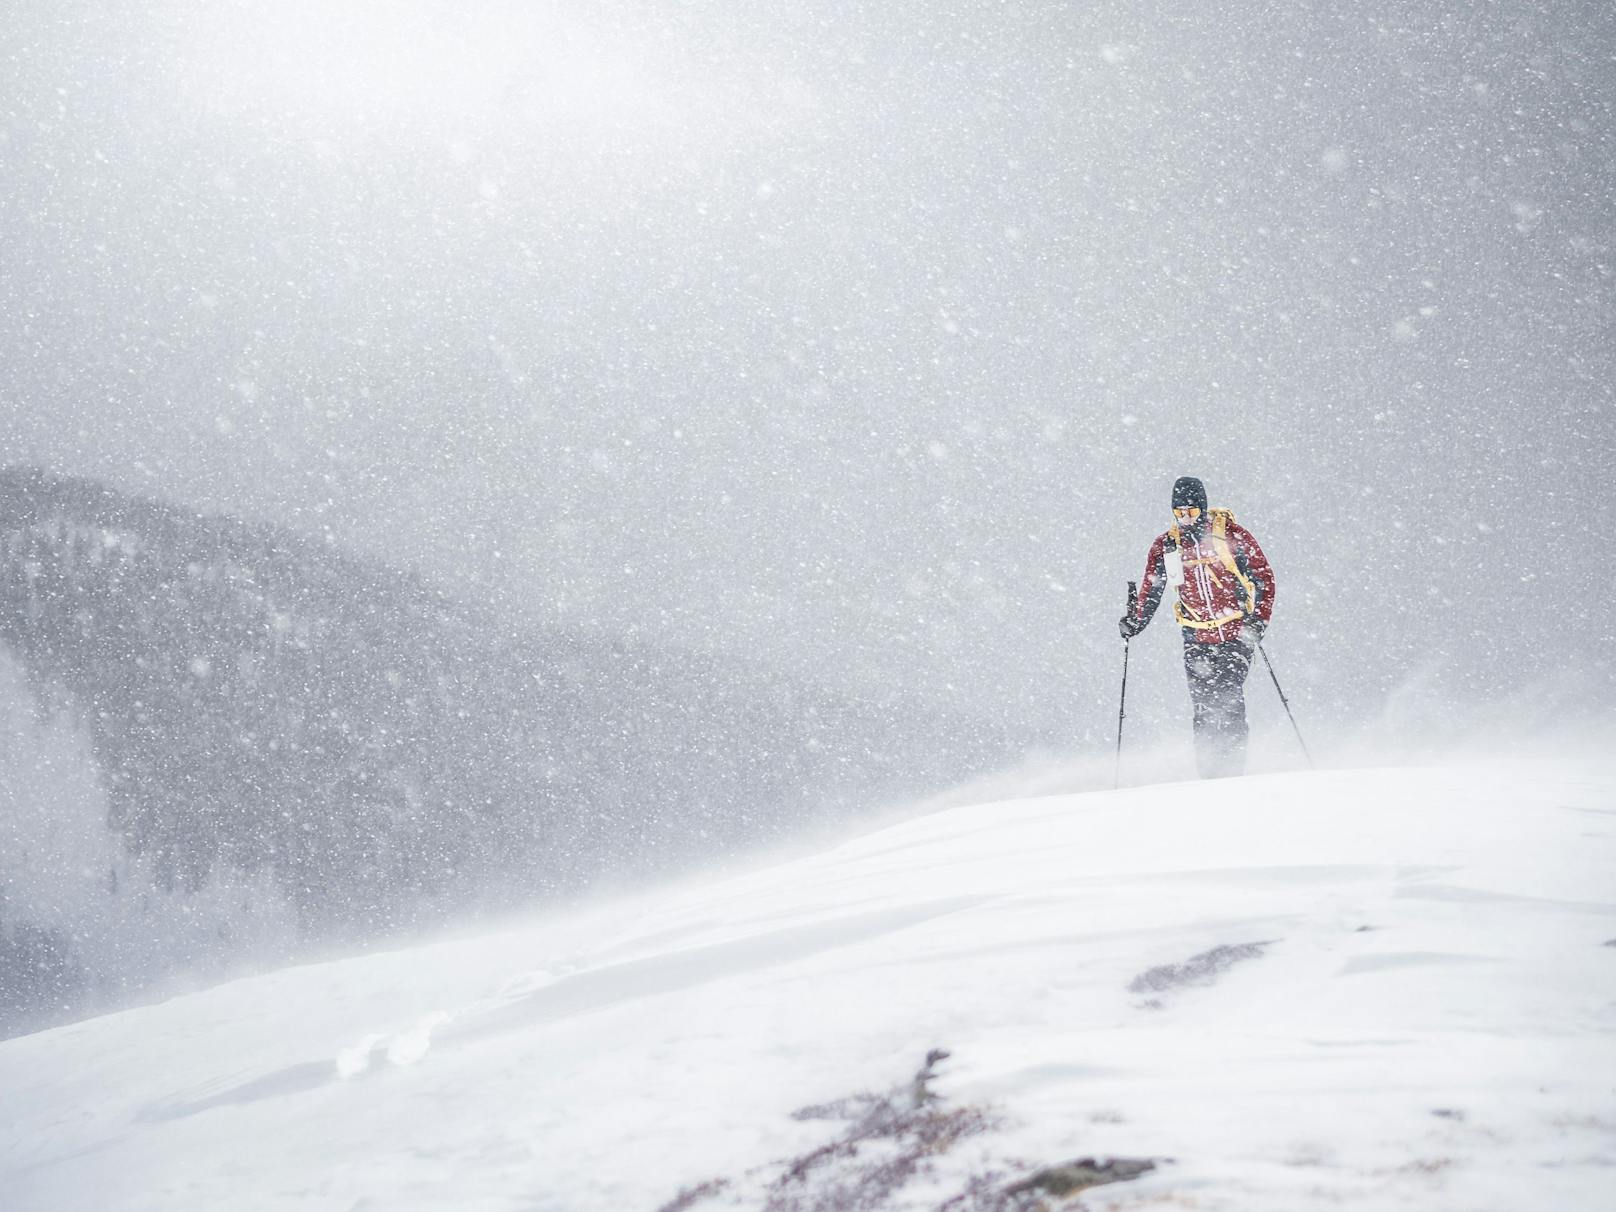 Der Mann verschwand während einer Skiabfahrt bei dichtem Schneefall, konnte nur noch tot geborgen werden. Symbolbild